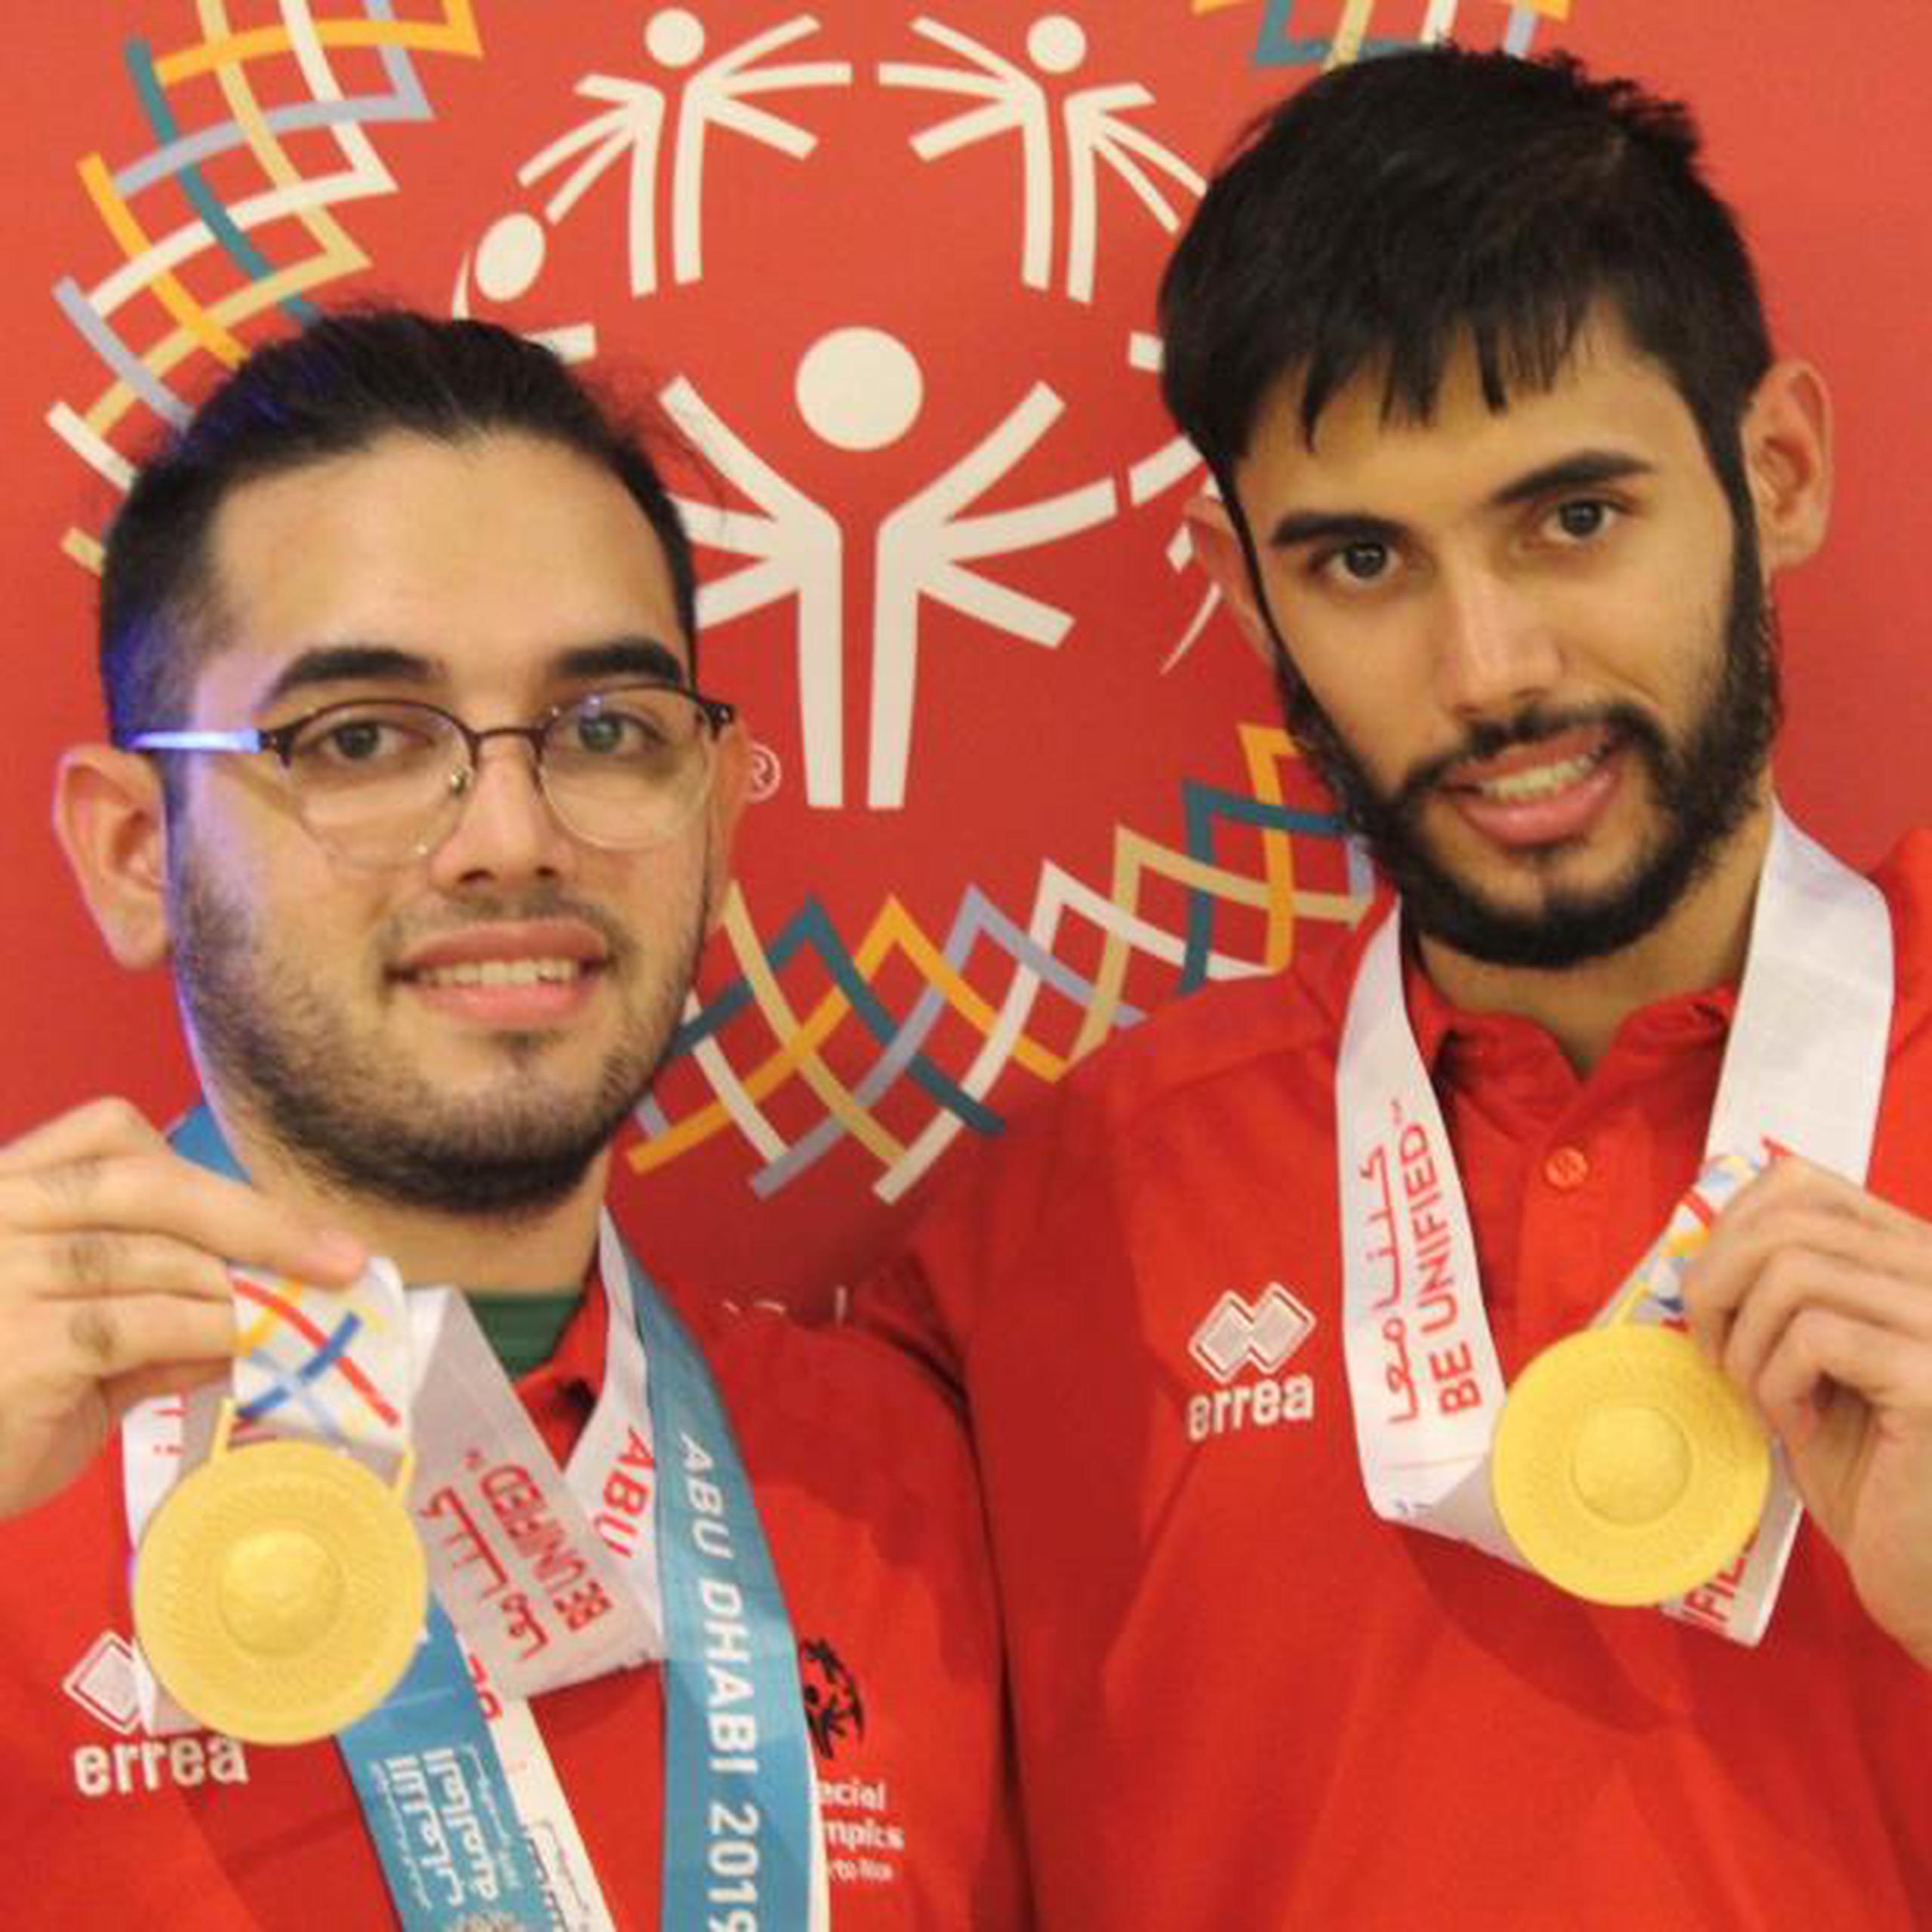 En el penúltima de competencia Puerto Rico a colectado un total de 34 medallas, 10 de oro, nueve de plata y 15 de bronce. (Suministrada)